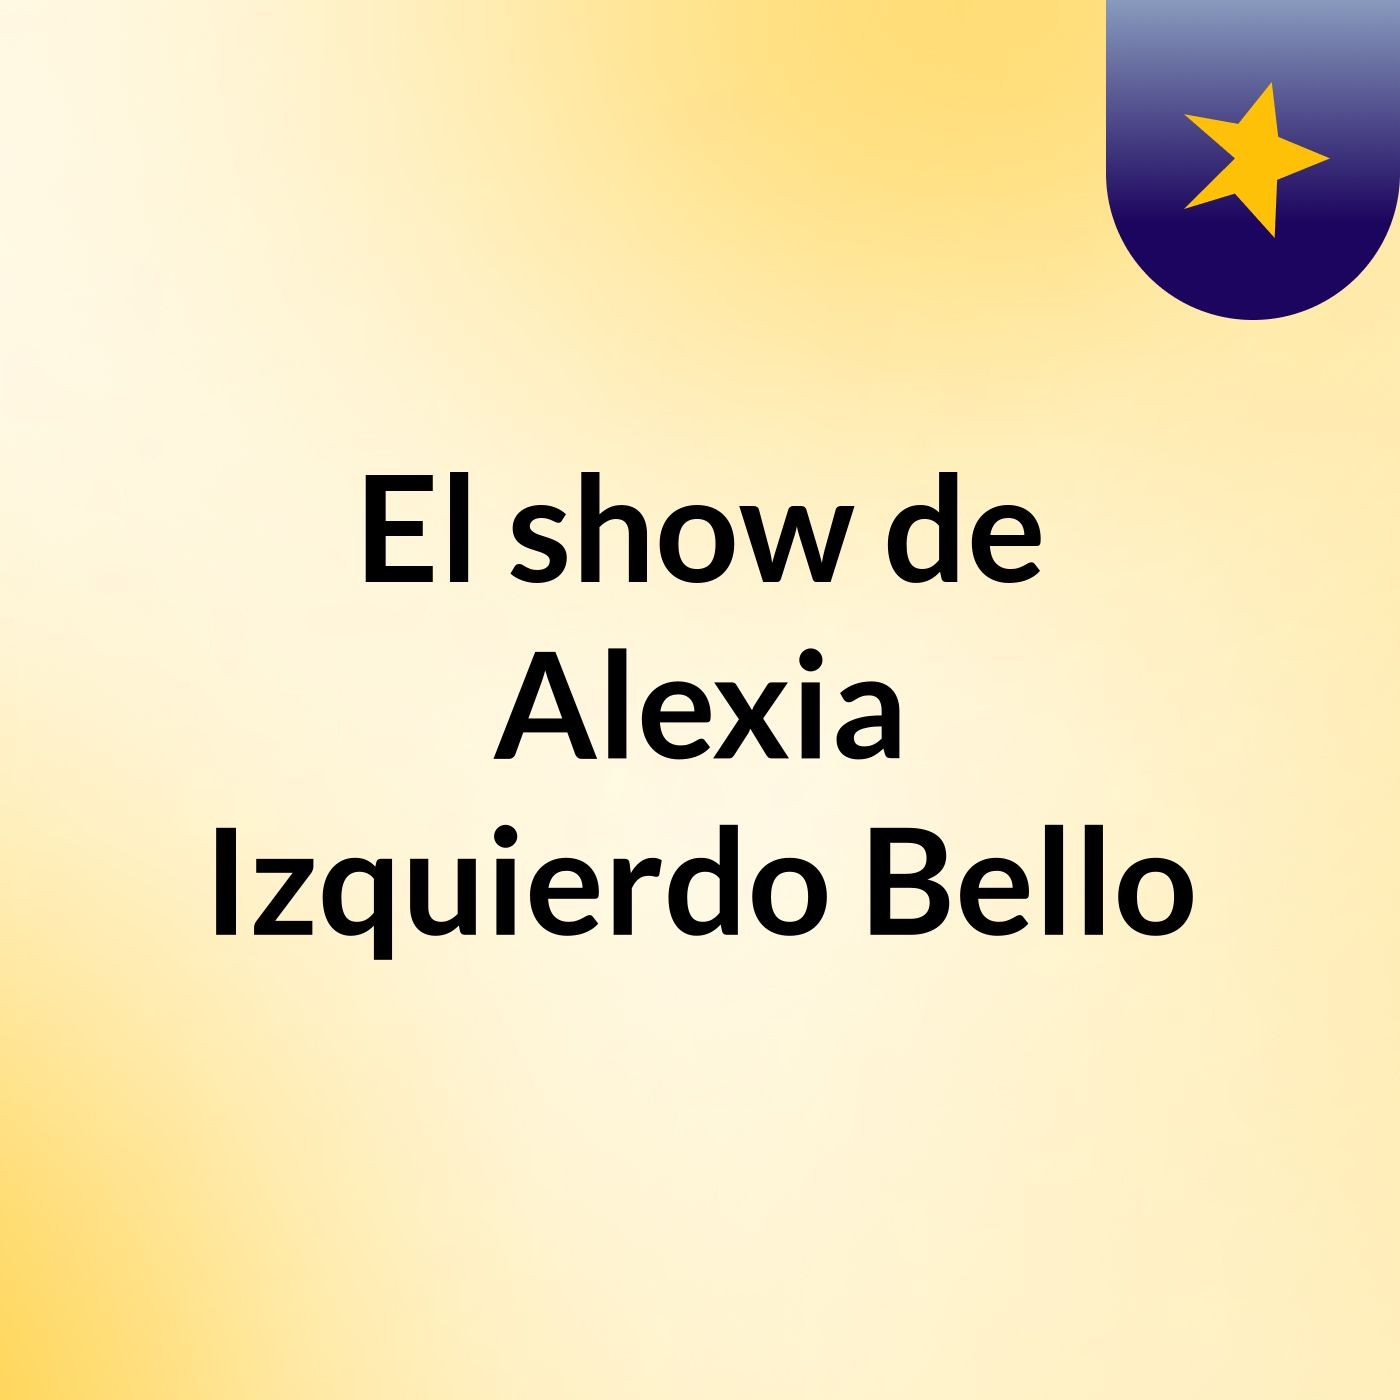 El show de Alexia Izquierdo Bello